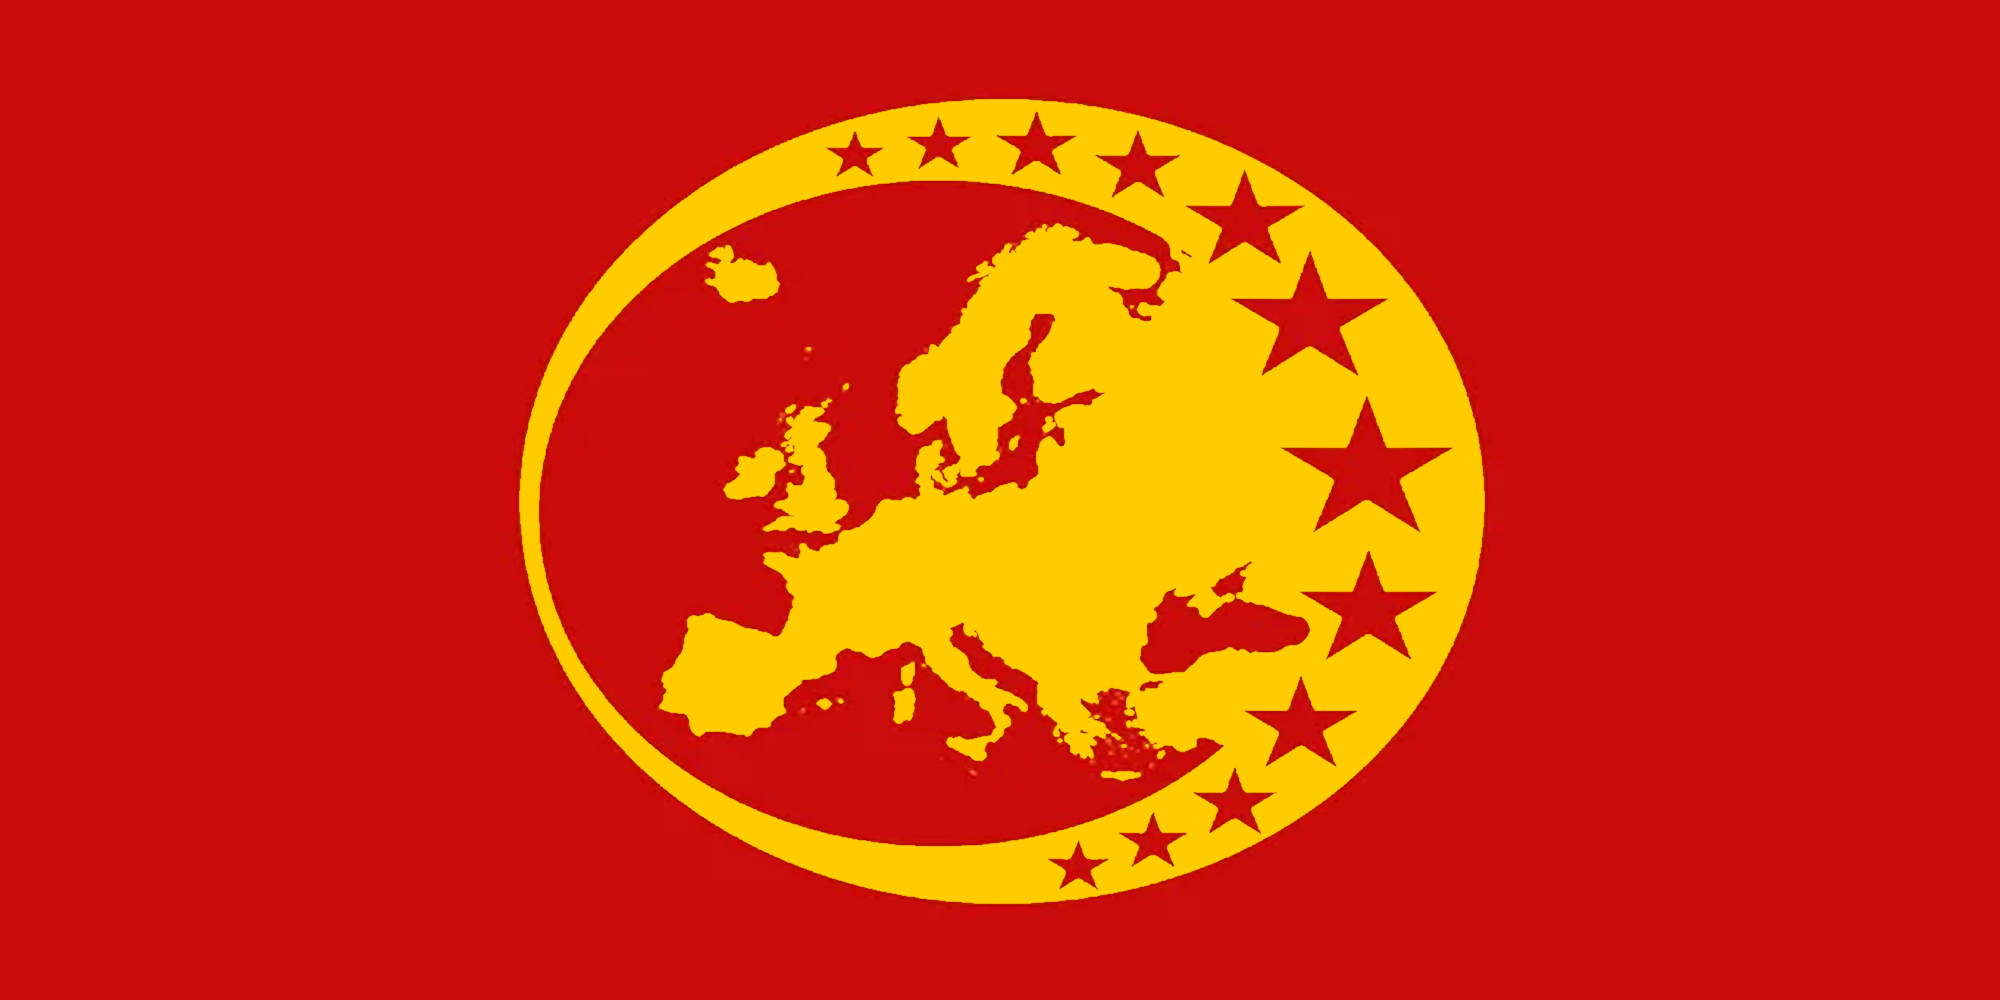 EUSSR (European USSR) flag Blank Meme Template